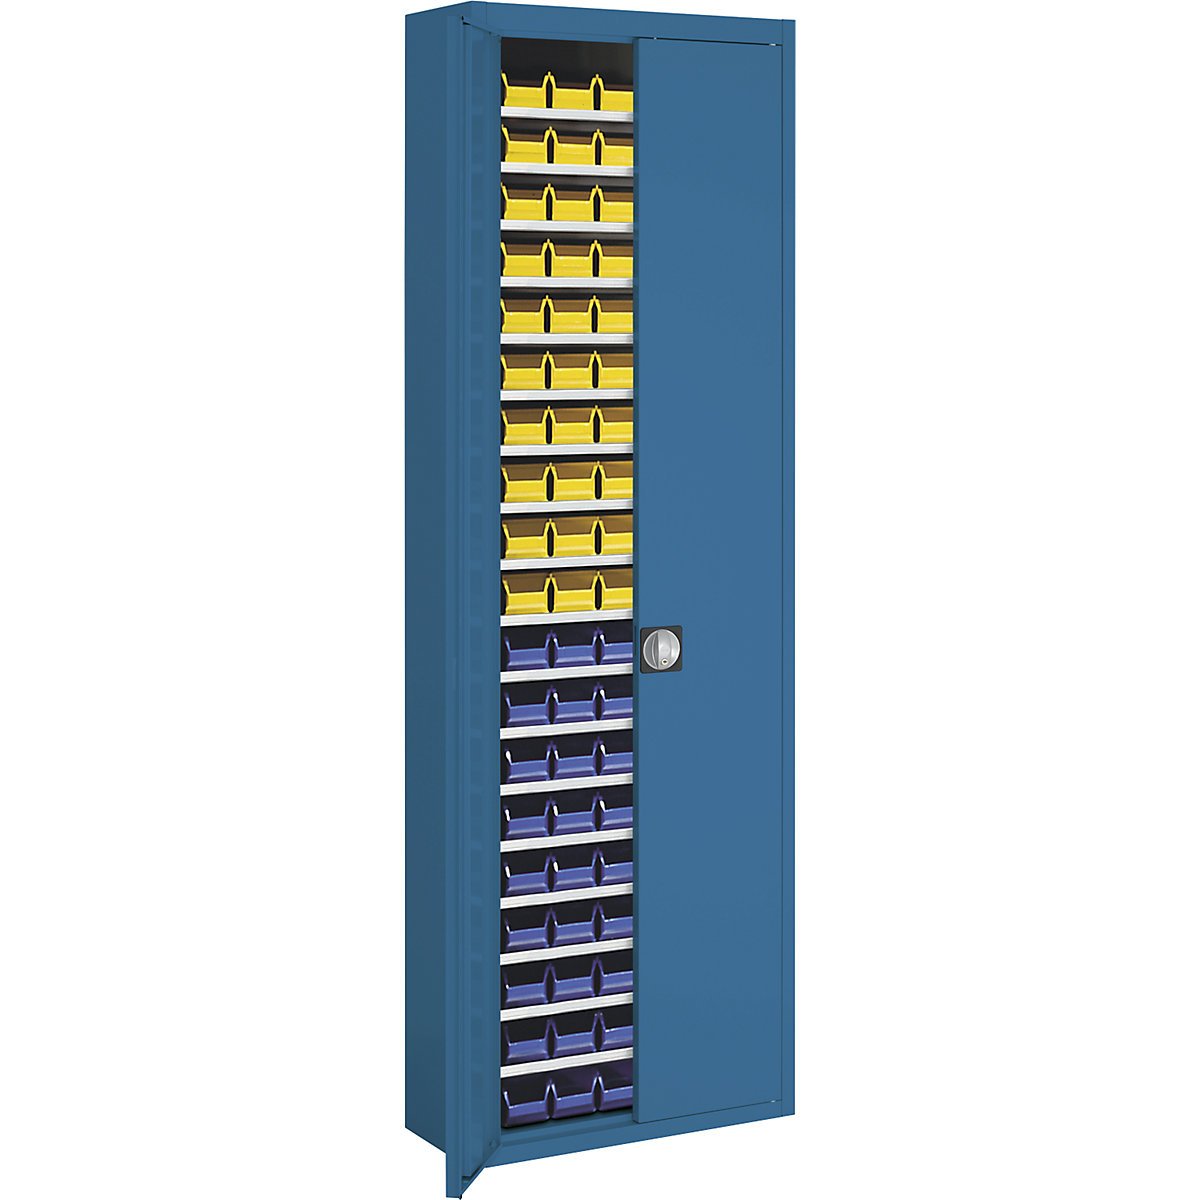 Magazinschrank mit Sichtlagerkästen mauser, HxBxT 2150 x 680 x 280 mm, zweifarbig, Korpus grau, Türen blau, 114 Kästen-10